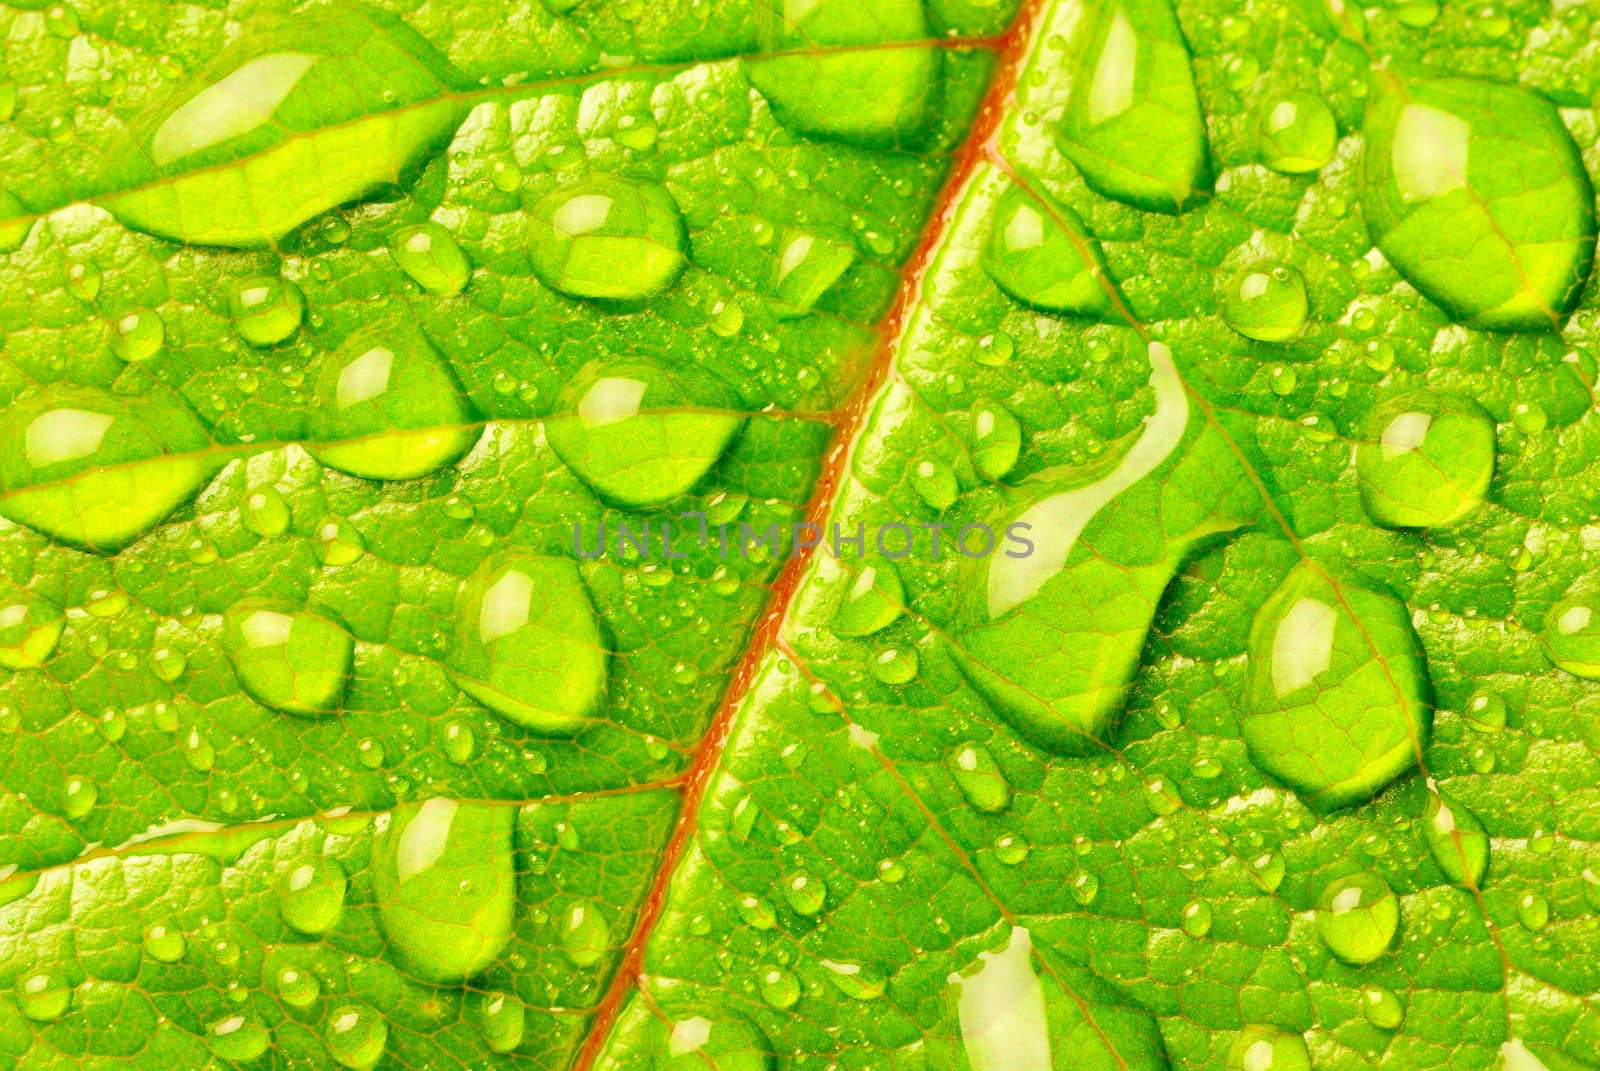 Morning dew on a green tree leaf